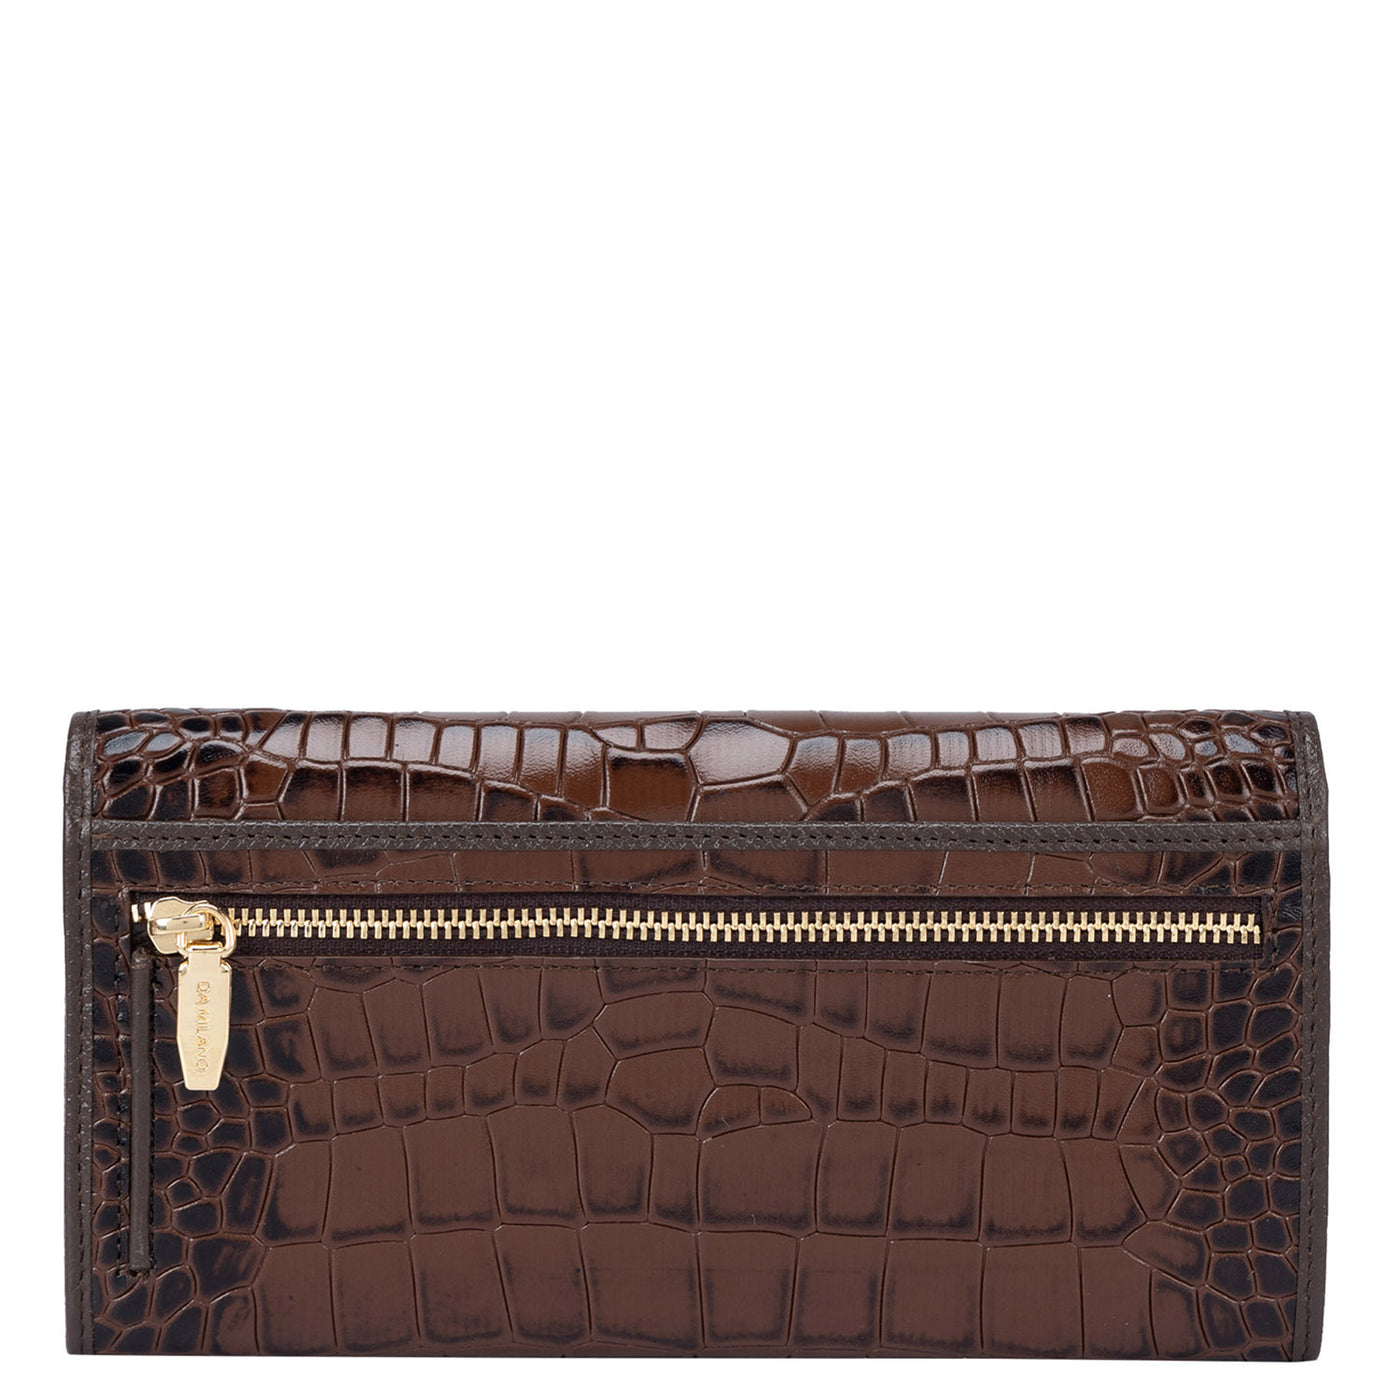 Brown Croco Leather Ladies & Mens Wallet Gift Set